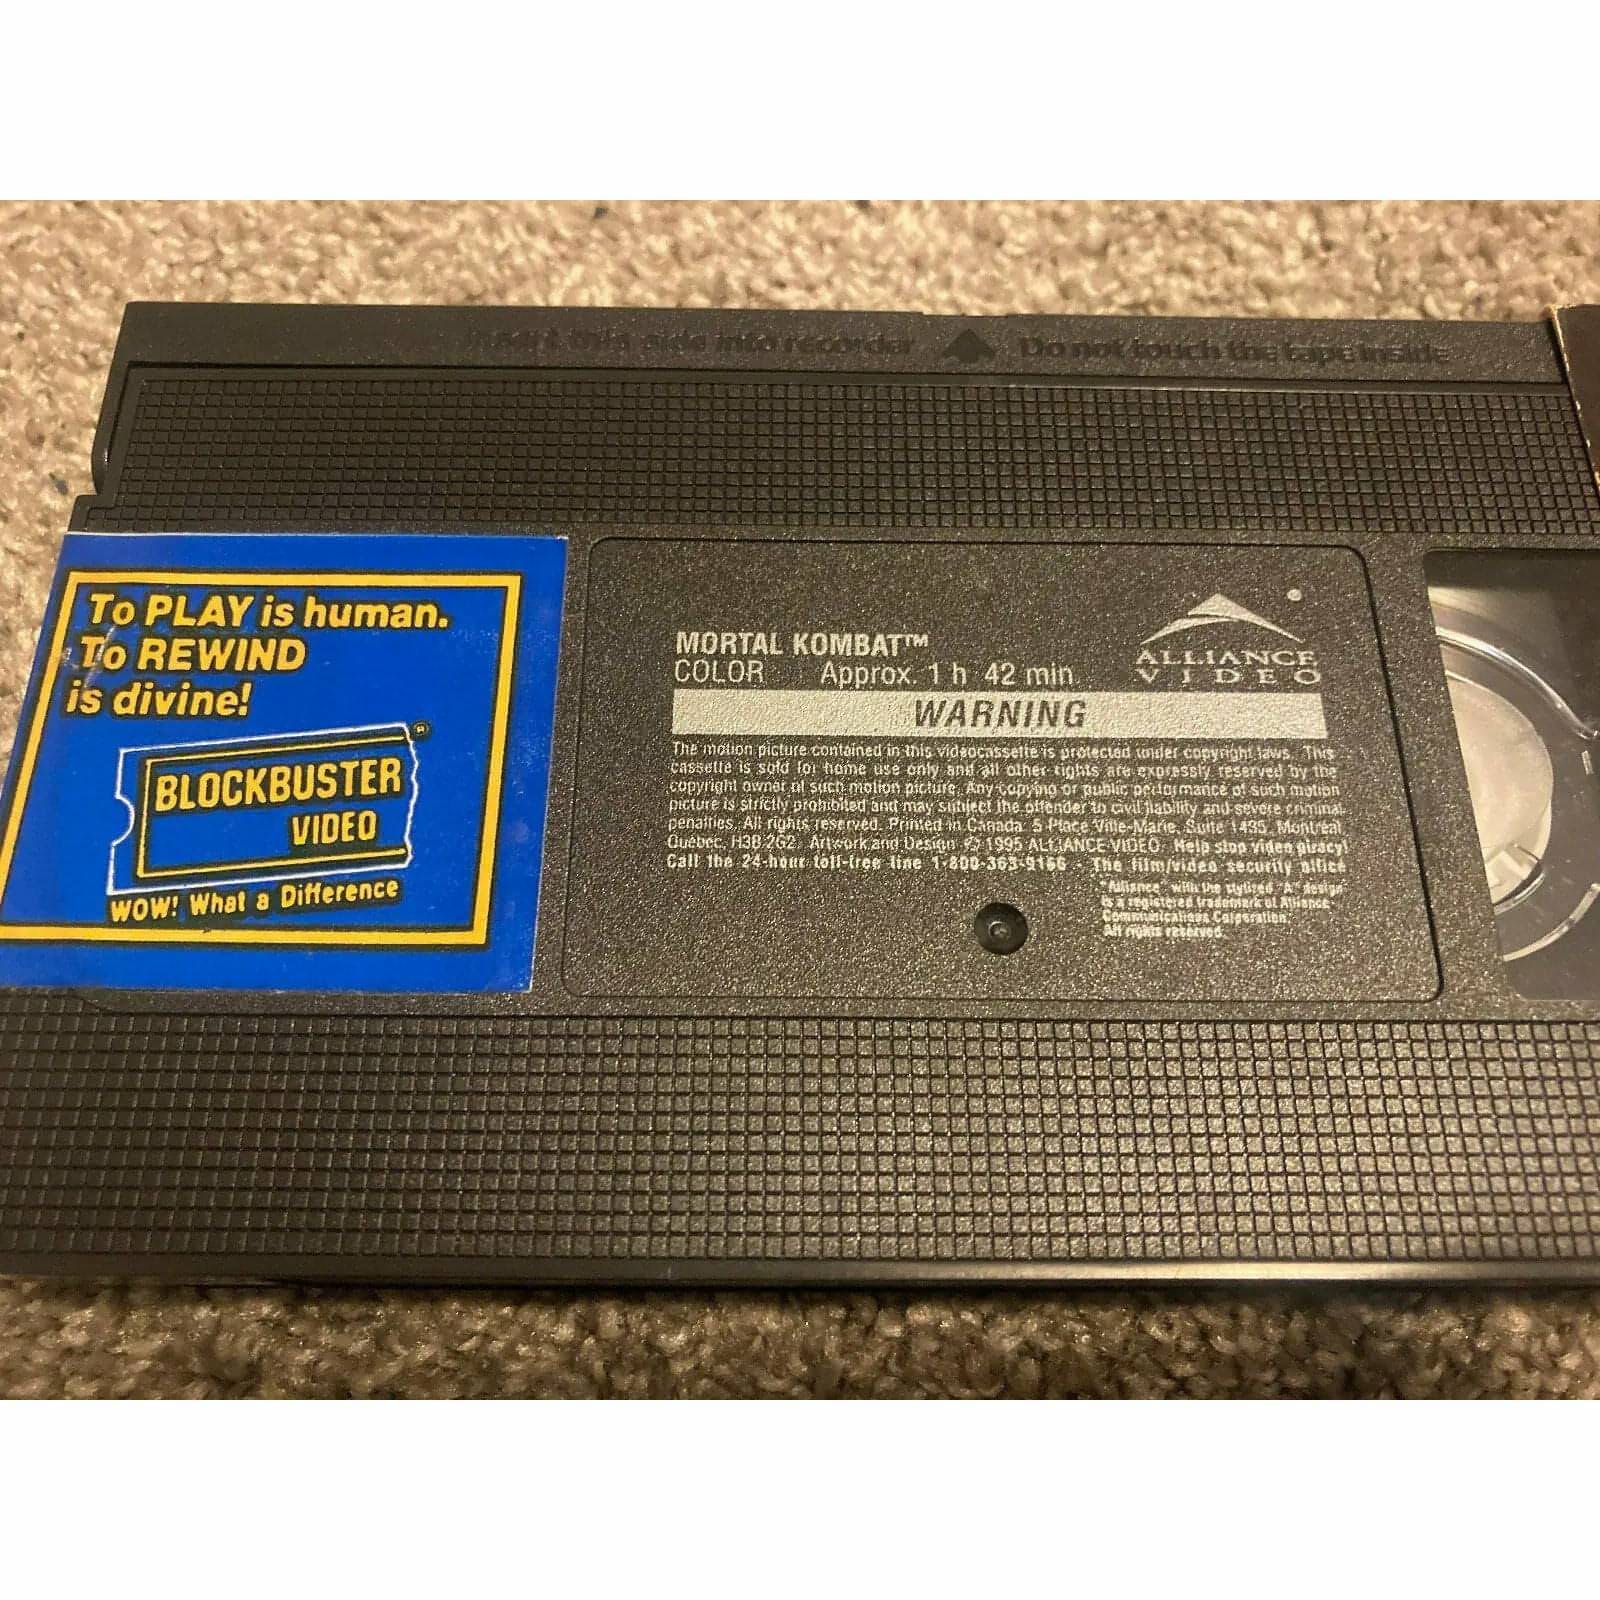 Mortal Kombat (VHS TAPES FOR SALE, 1995)